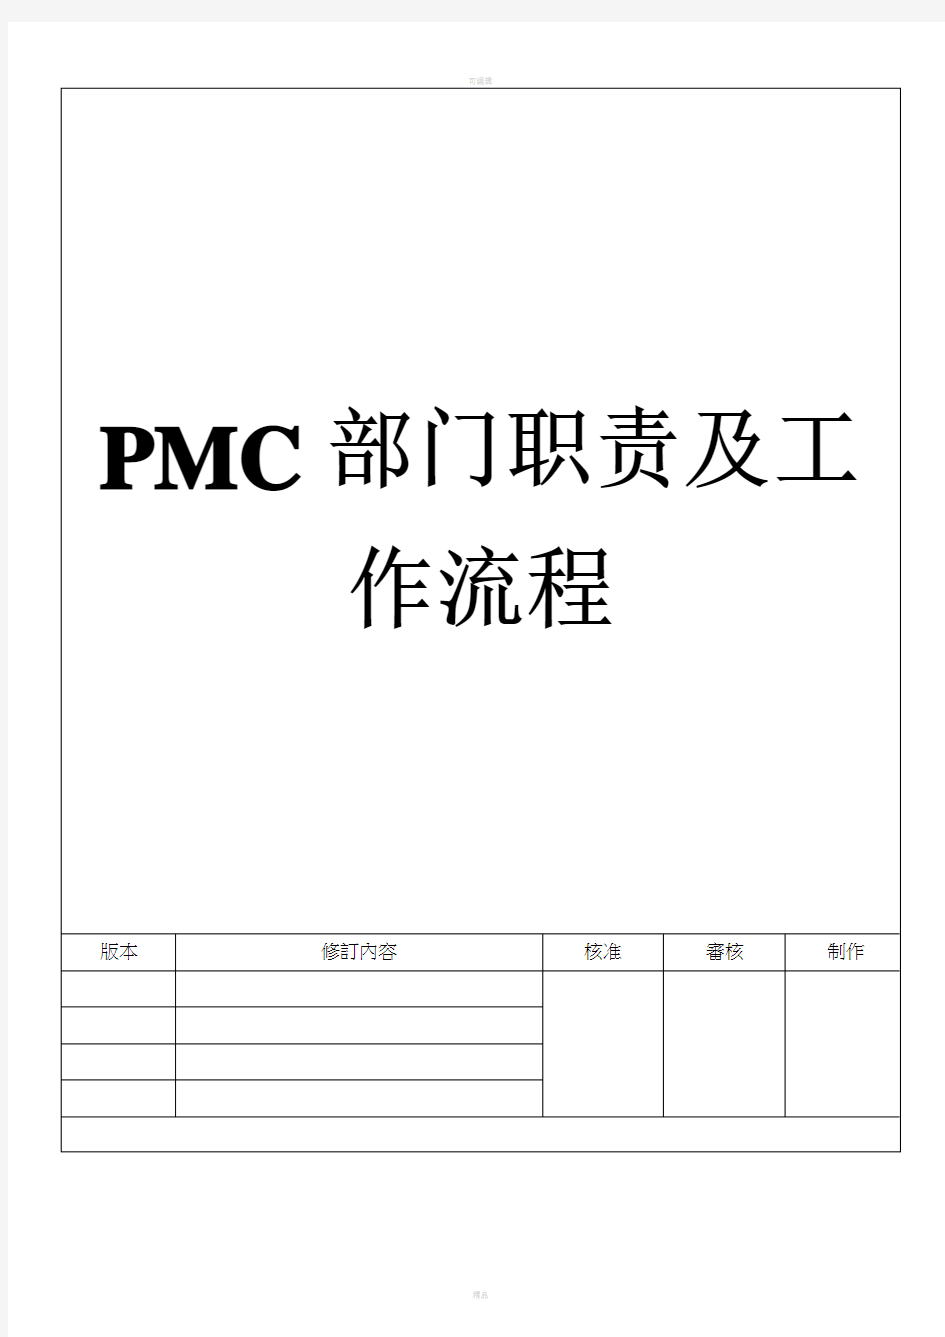 PMC部门职责及工作流程